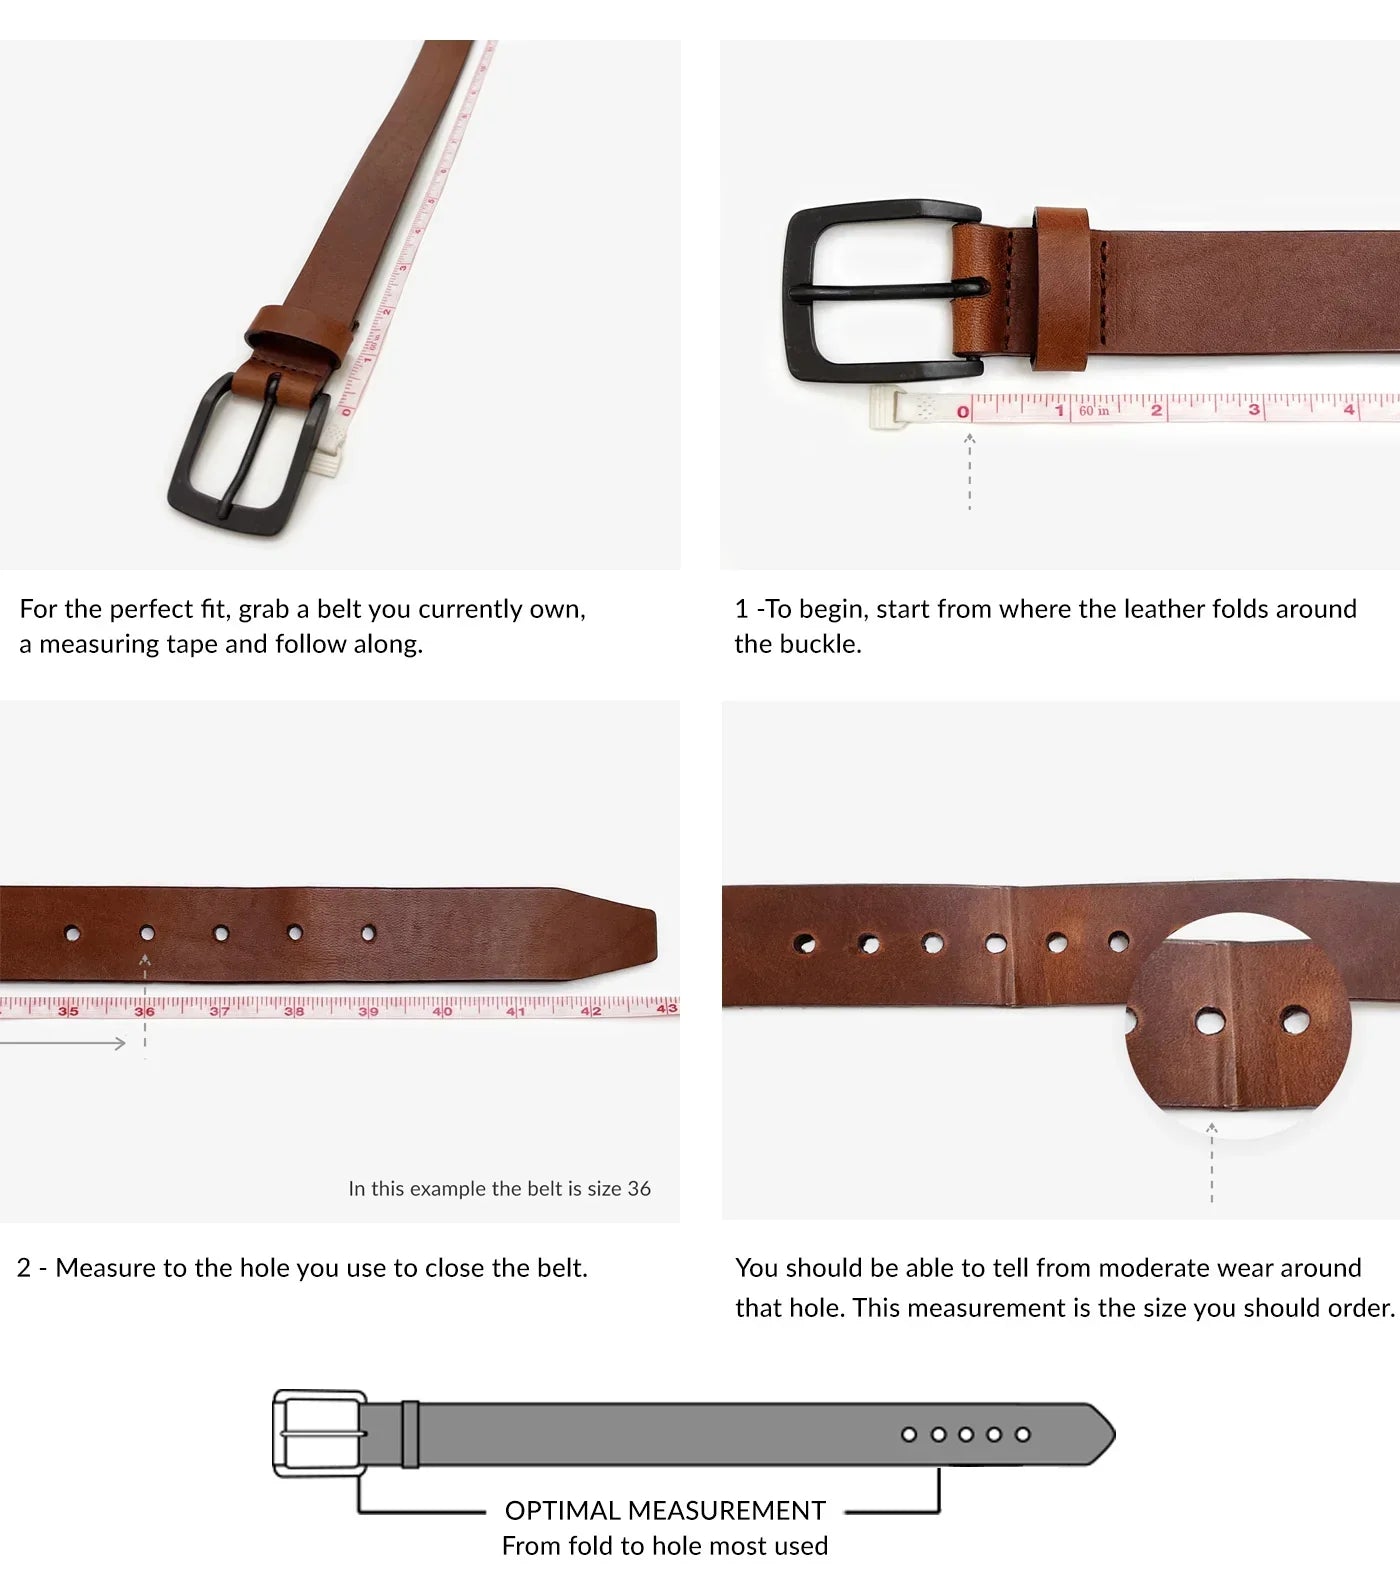 Brave Melle Bridle Leather Belt